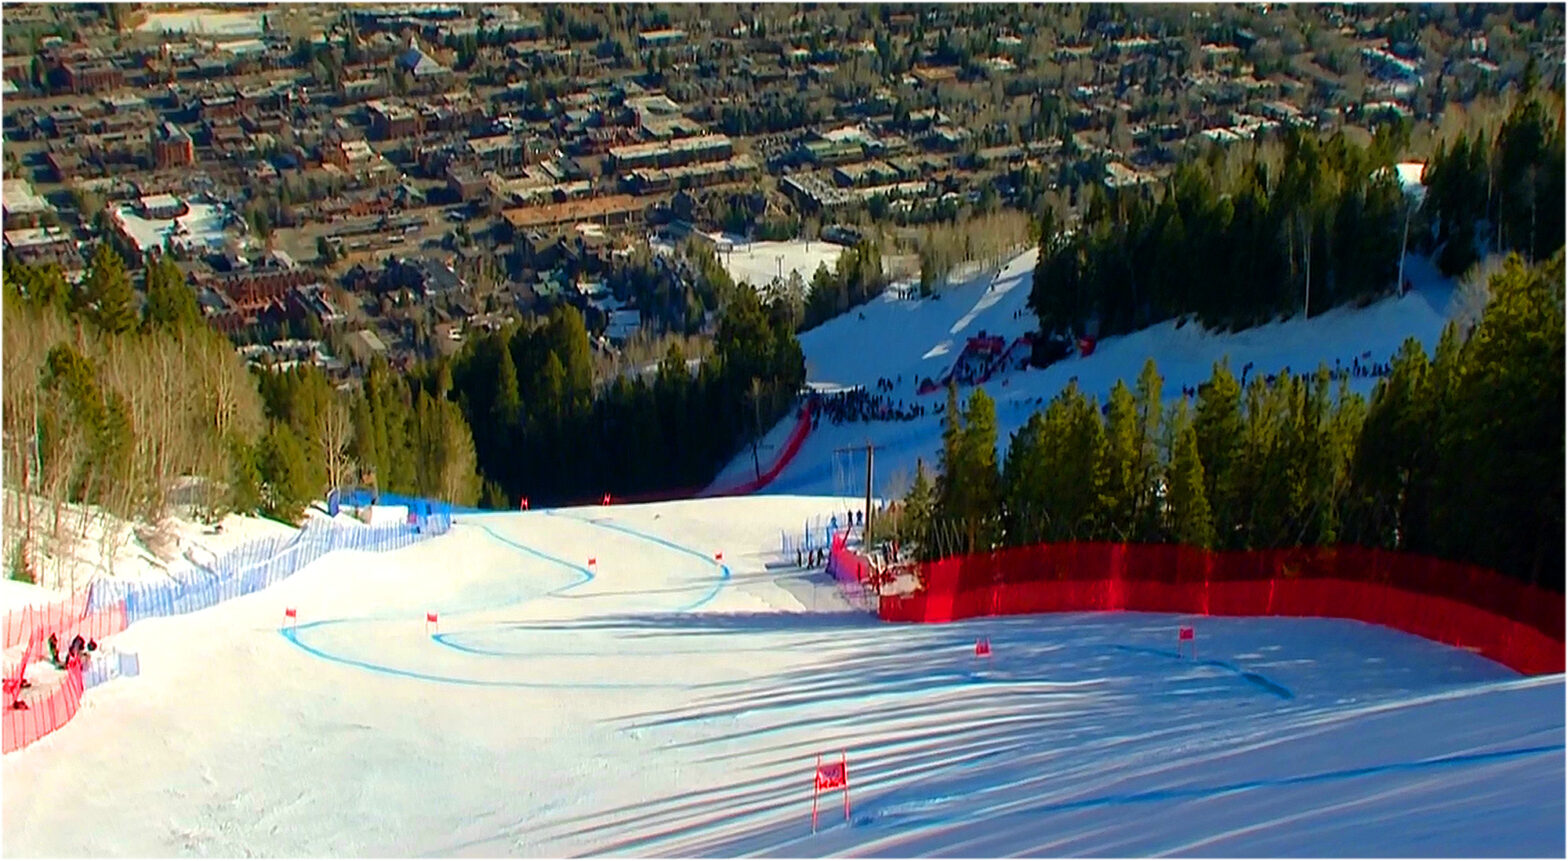 LIVE: 2. Ski Weltcup Abfahrtstraining der Herren in Aspen - Vorbericht, Startliste und Liveticker - Startzeit 19.30 Uhr (MEZ)